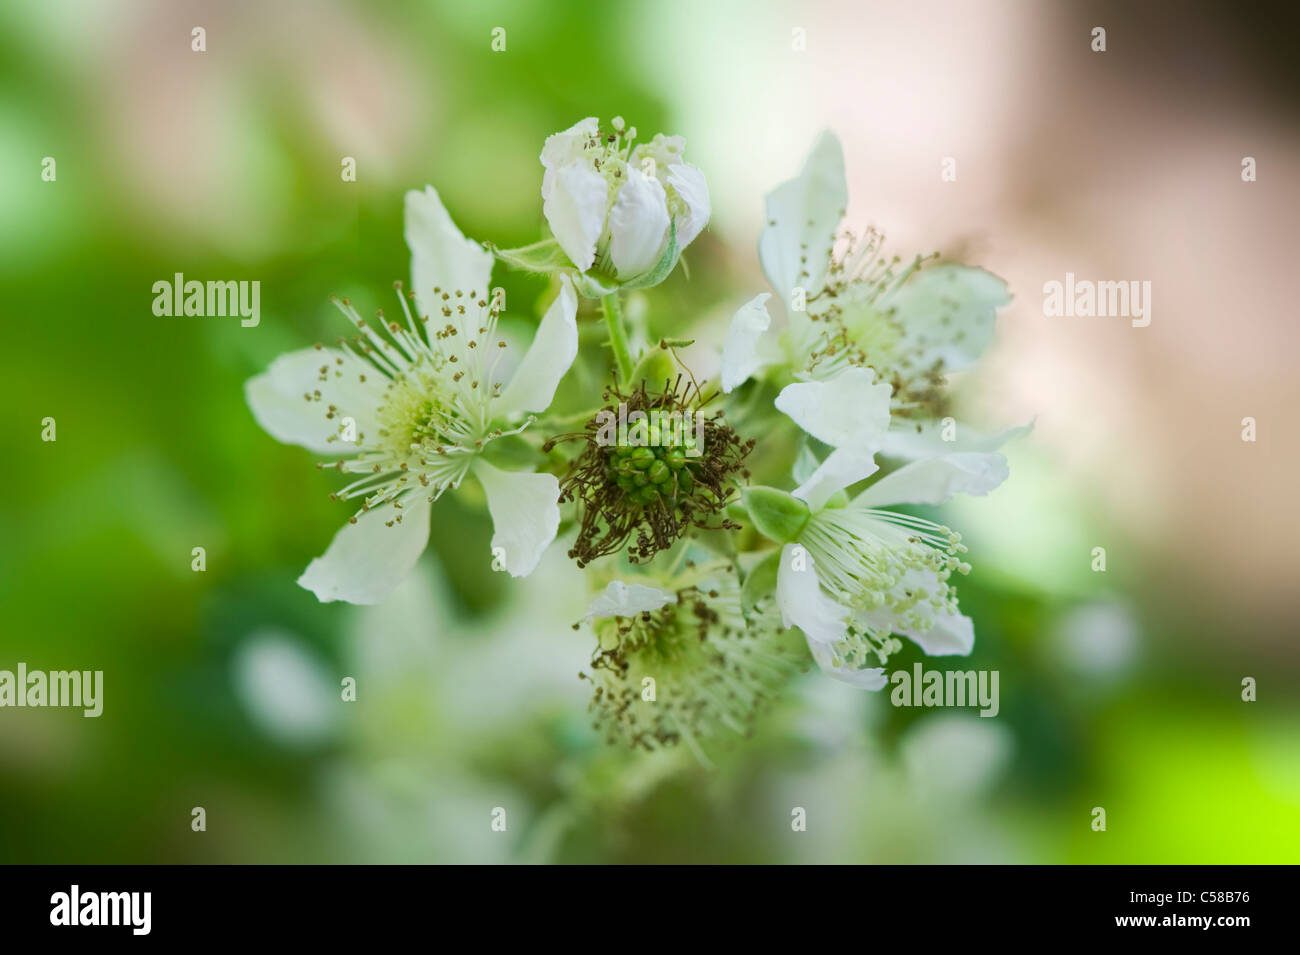 Close-up immagine della fioritura estiva rovo o Blackberry fiori che può essere morbido di colore rosa o bianco, prese nei confronti di un dolce sottofondo. Foto Stock